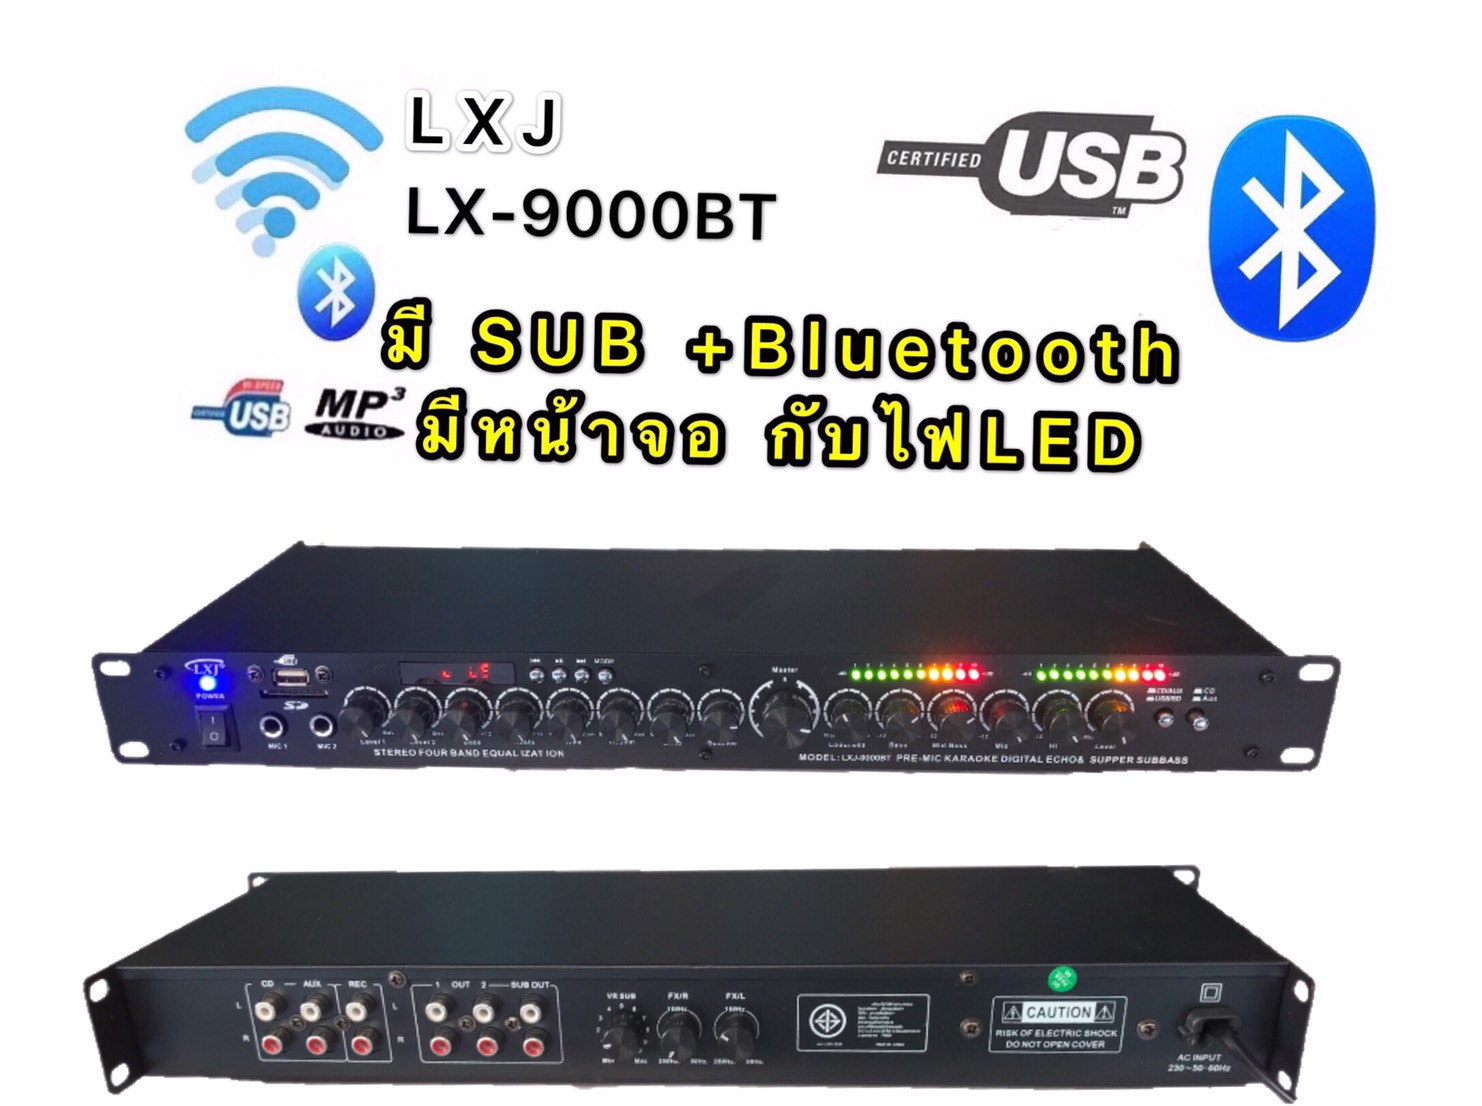 ปรีแอมป์คาราโอเกะมีMP3+USB+SD+Bluetooth มี หน้าจอ กับไฟLEDส่งเร็วเก็บเงินปลายทางได้( รุ่นLXJ LX-9000BT)